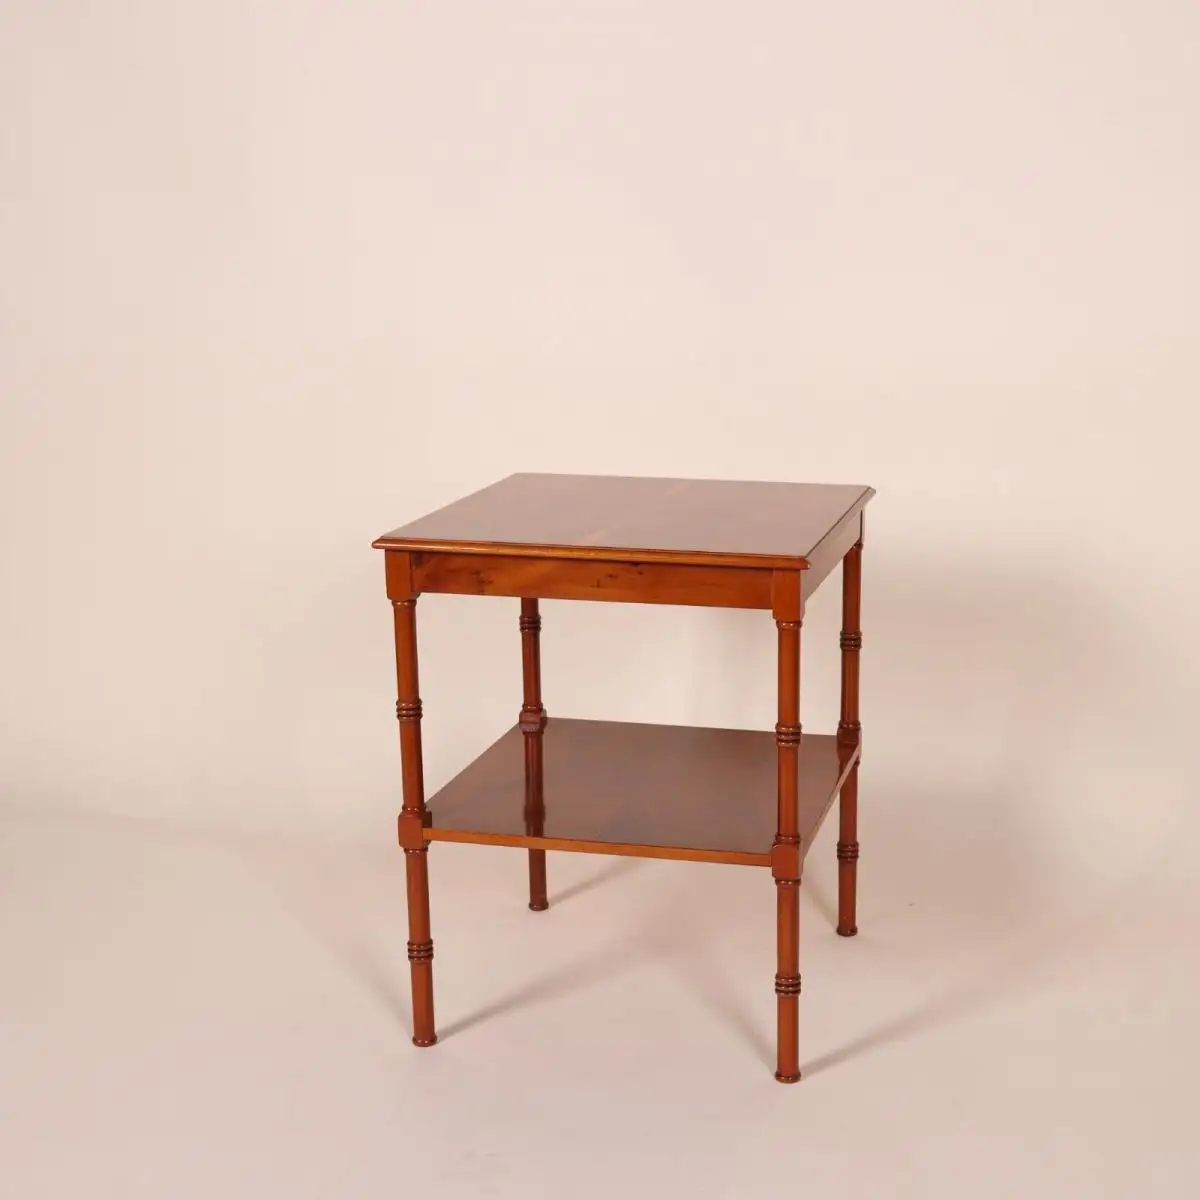 Englische Möbel Original Stilmöbel Heldense Eibe Tisch Beistelltisch Lampentisch 1